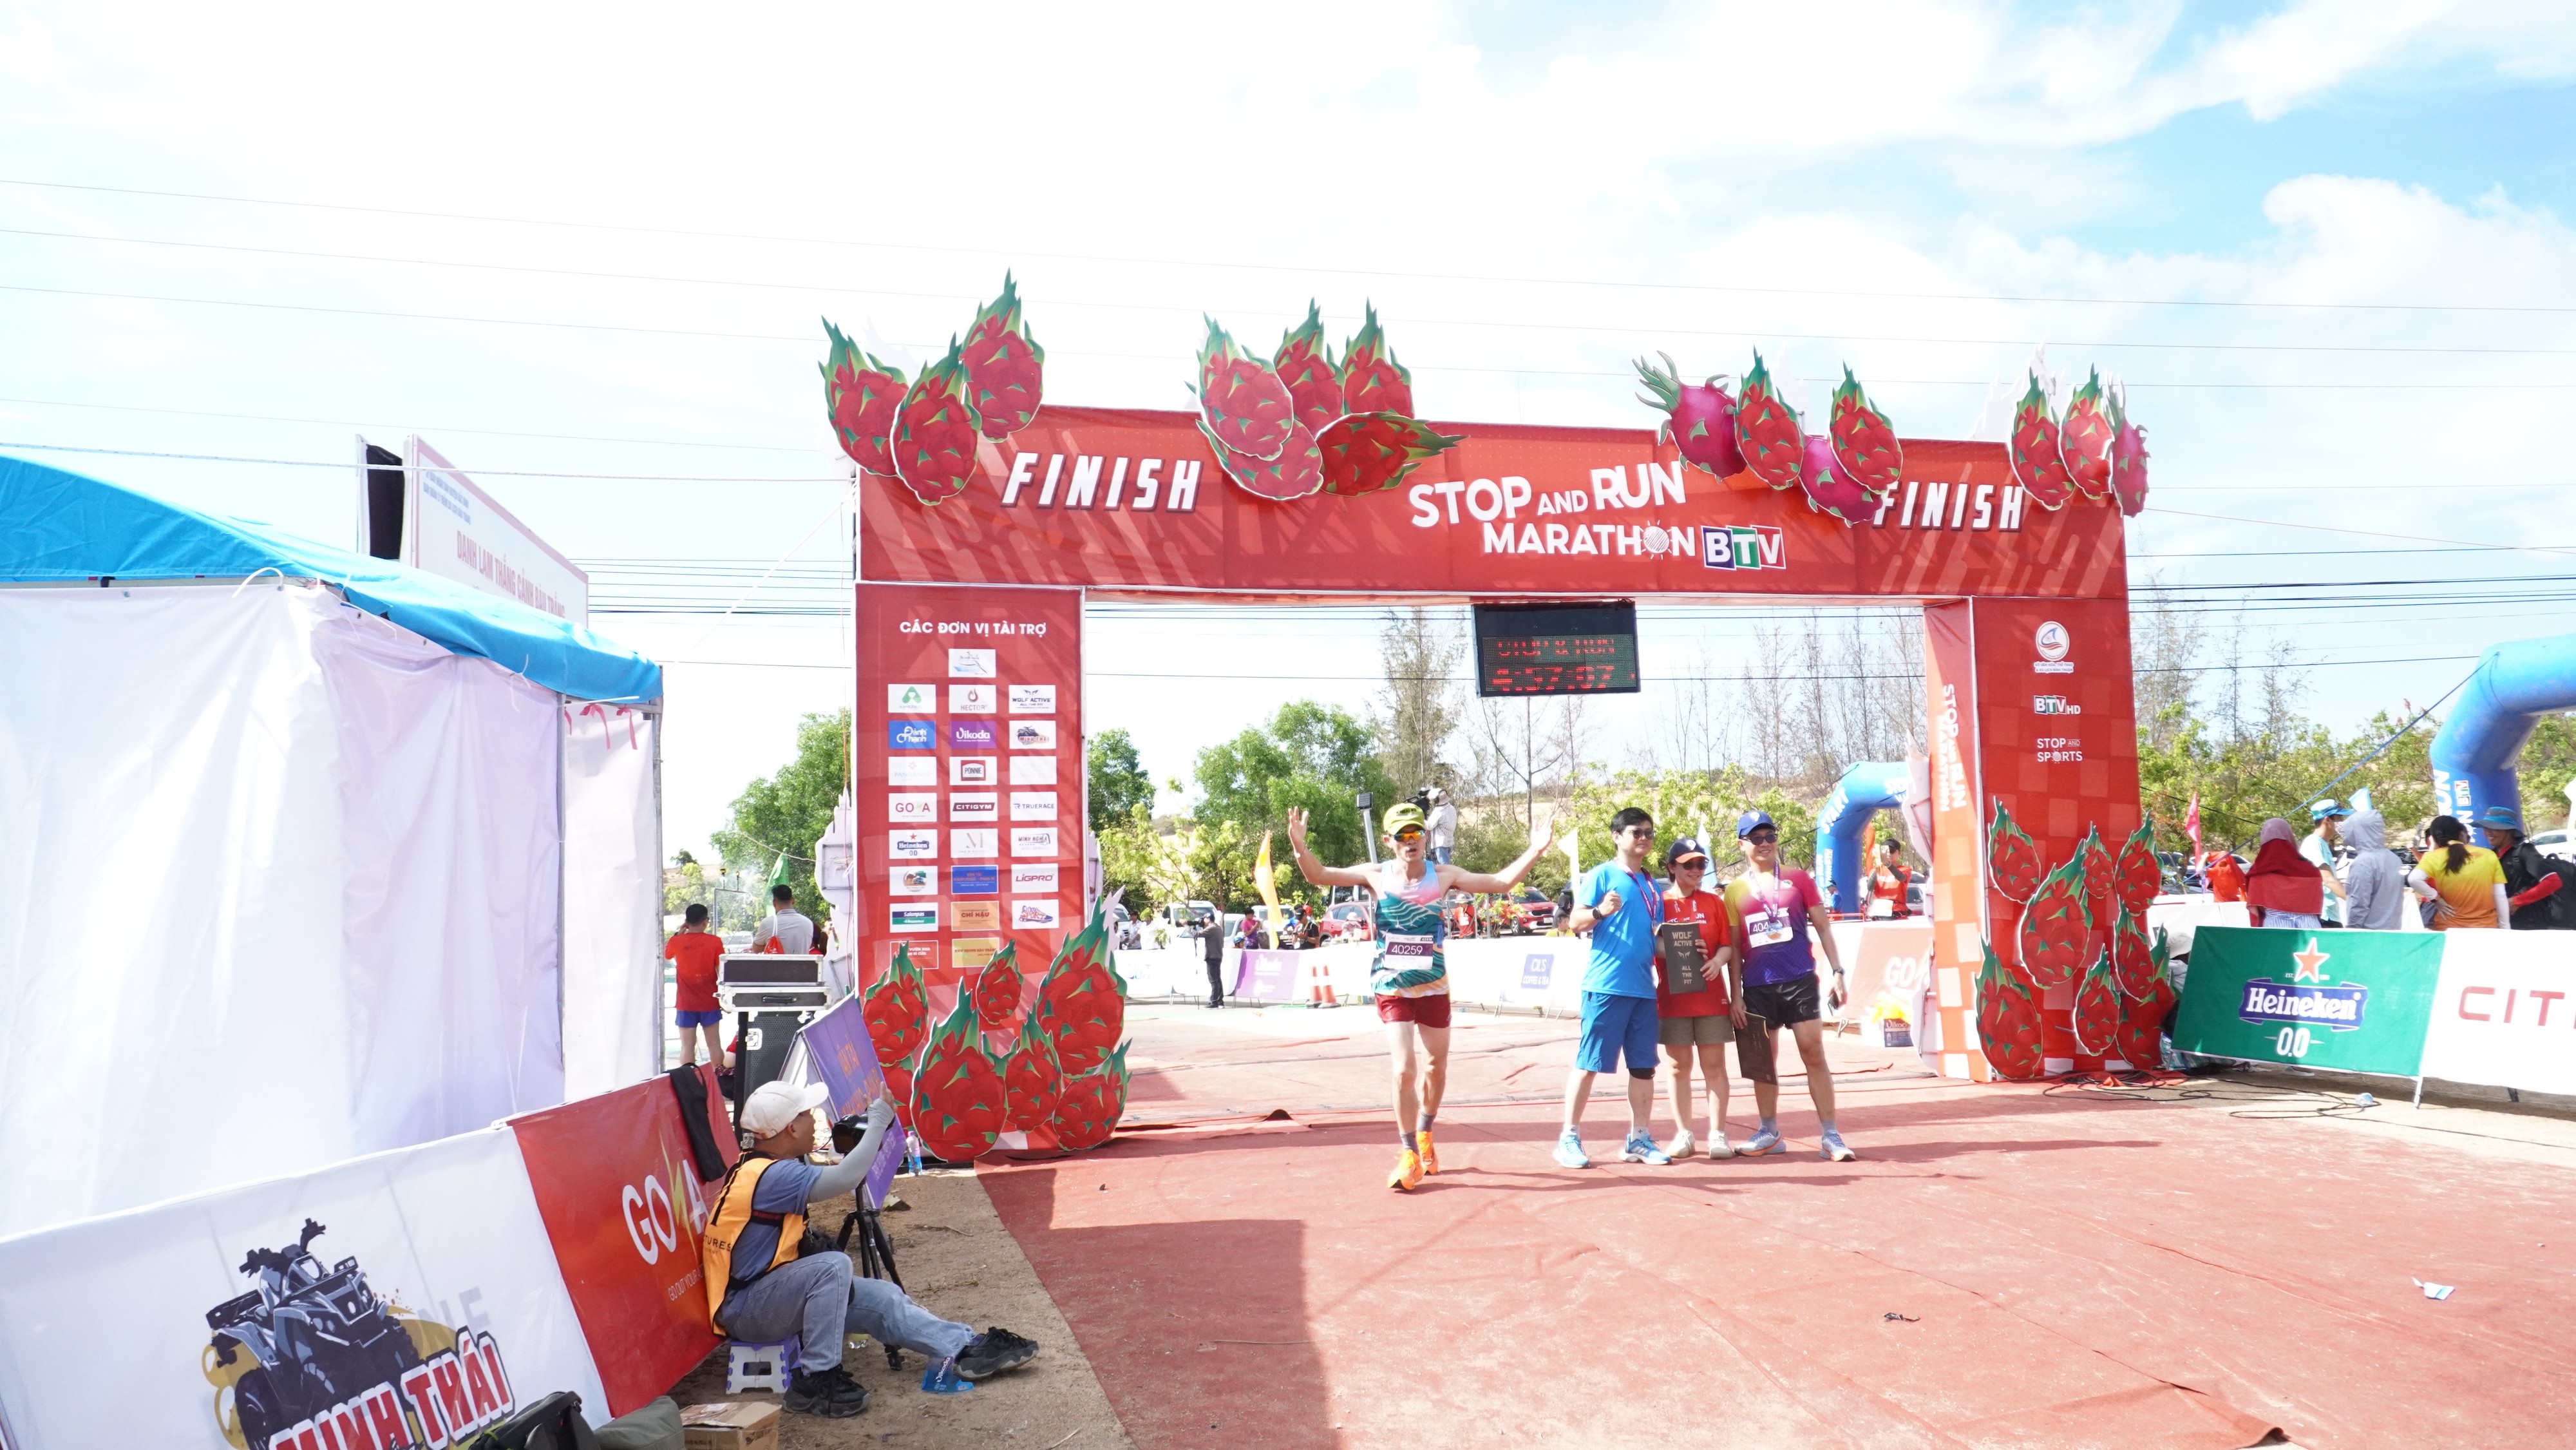 Hậu trường - Hơn 4.500 VĐV tham gia giải marathon trên cung đường đẹp nhất Việt Nam (Hình 5).